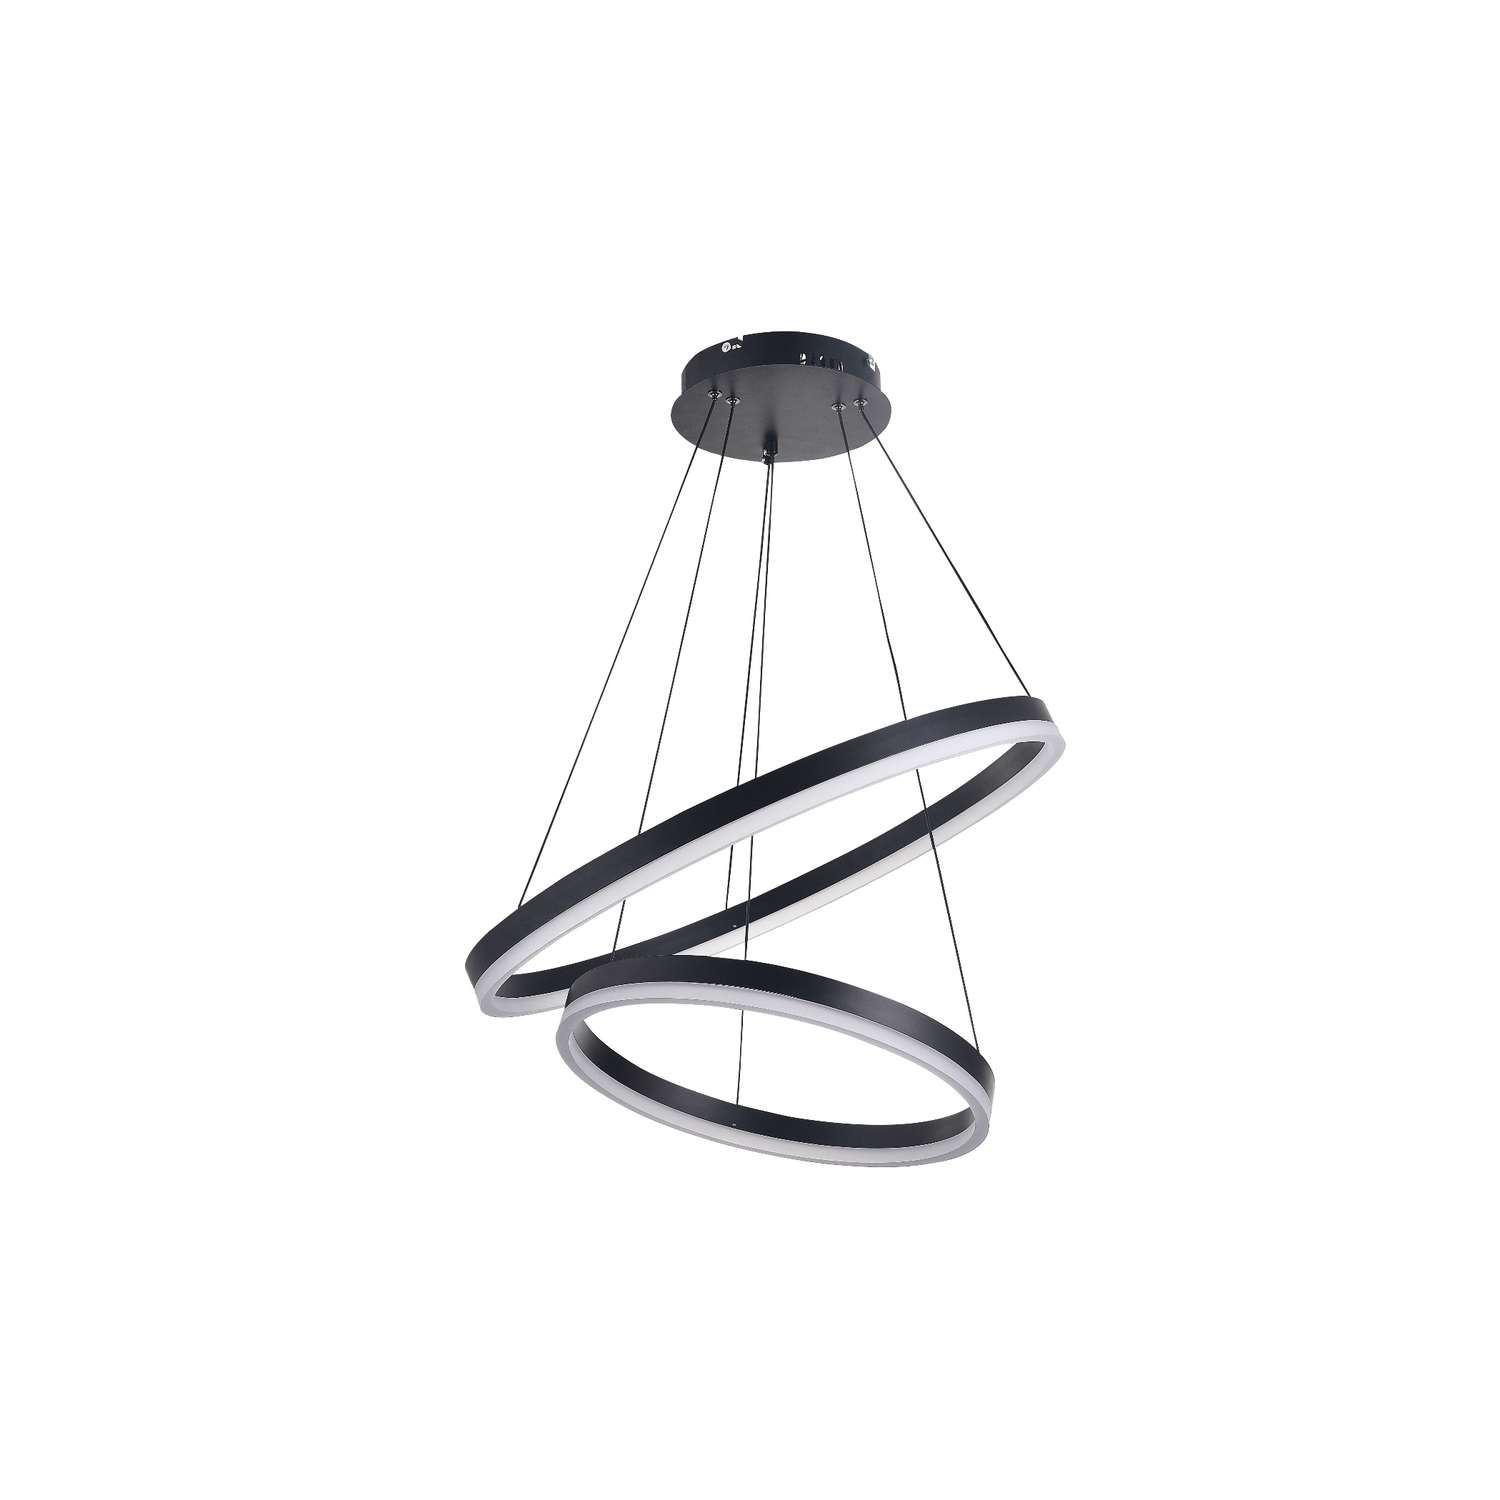 Светодиодный светильник NATALI KOVALTSEVA люстра двойной нимб 120W черный LED - фото 6